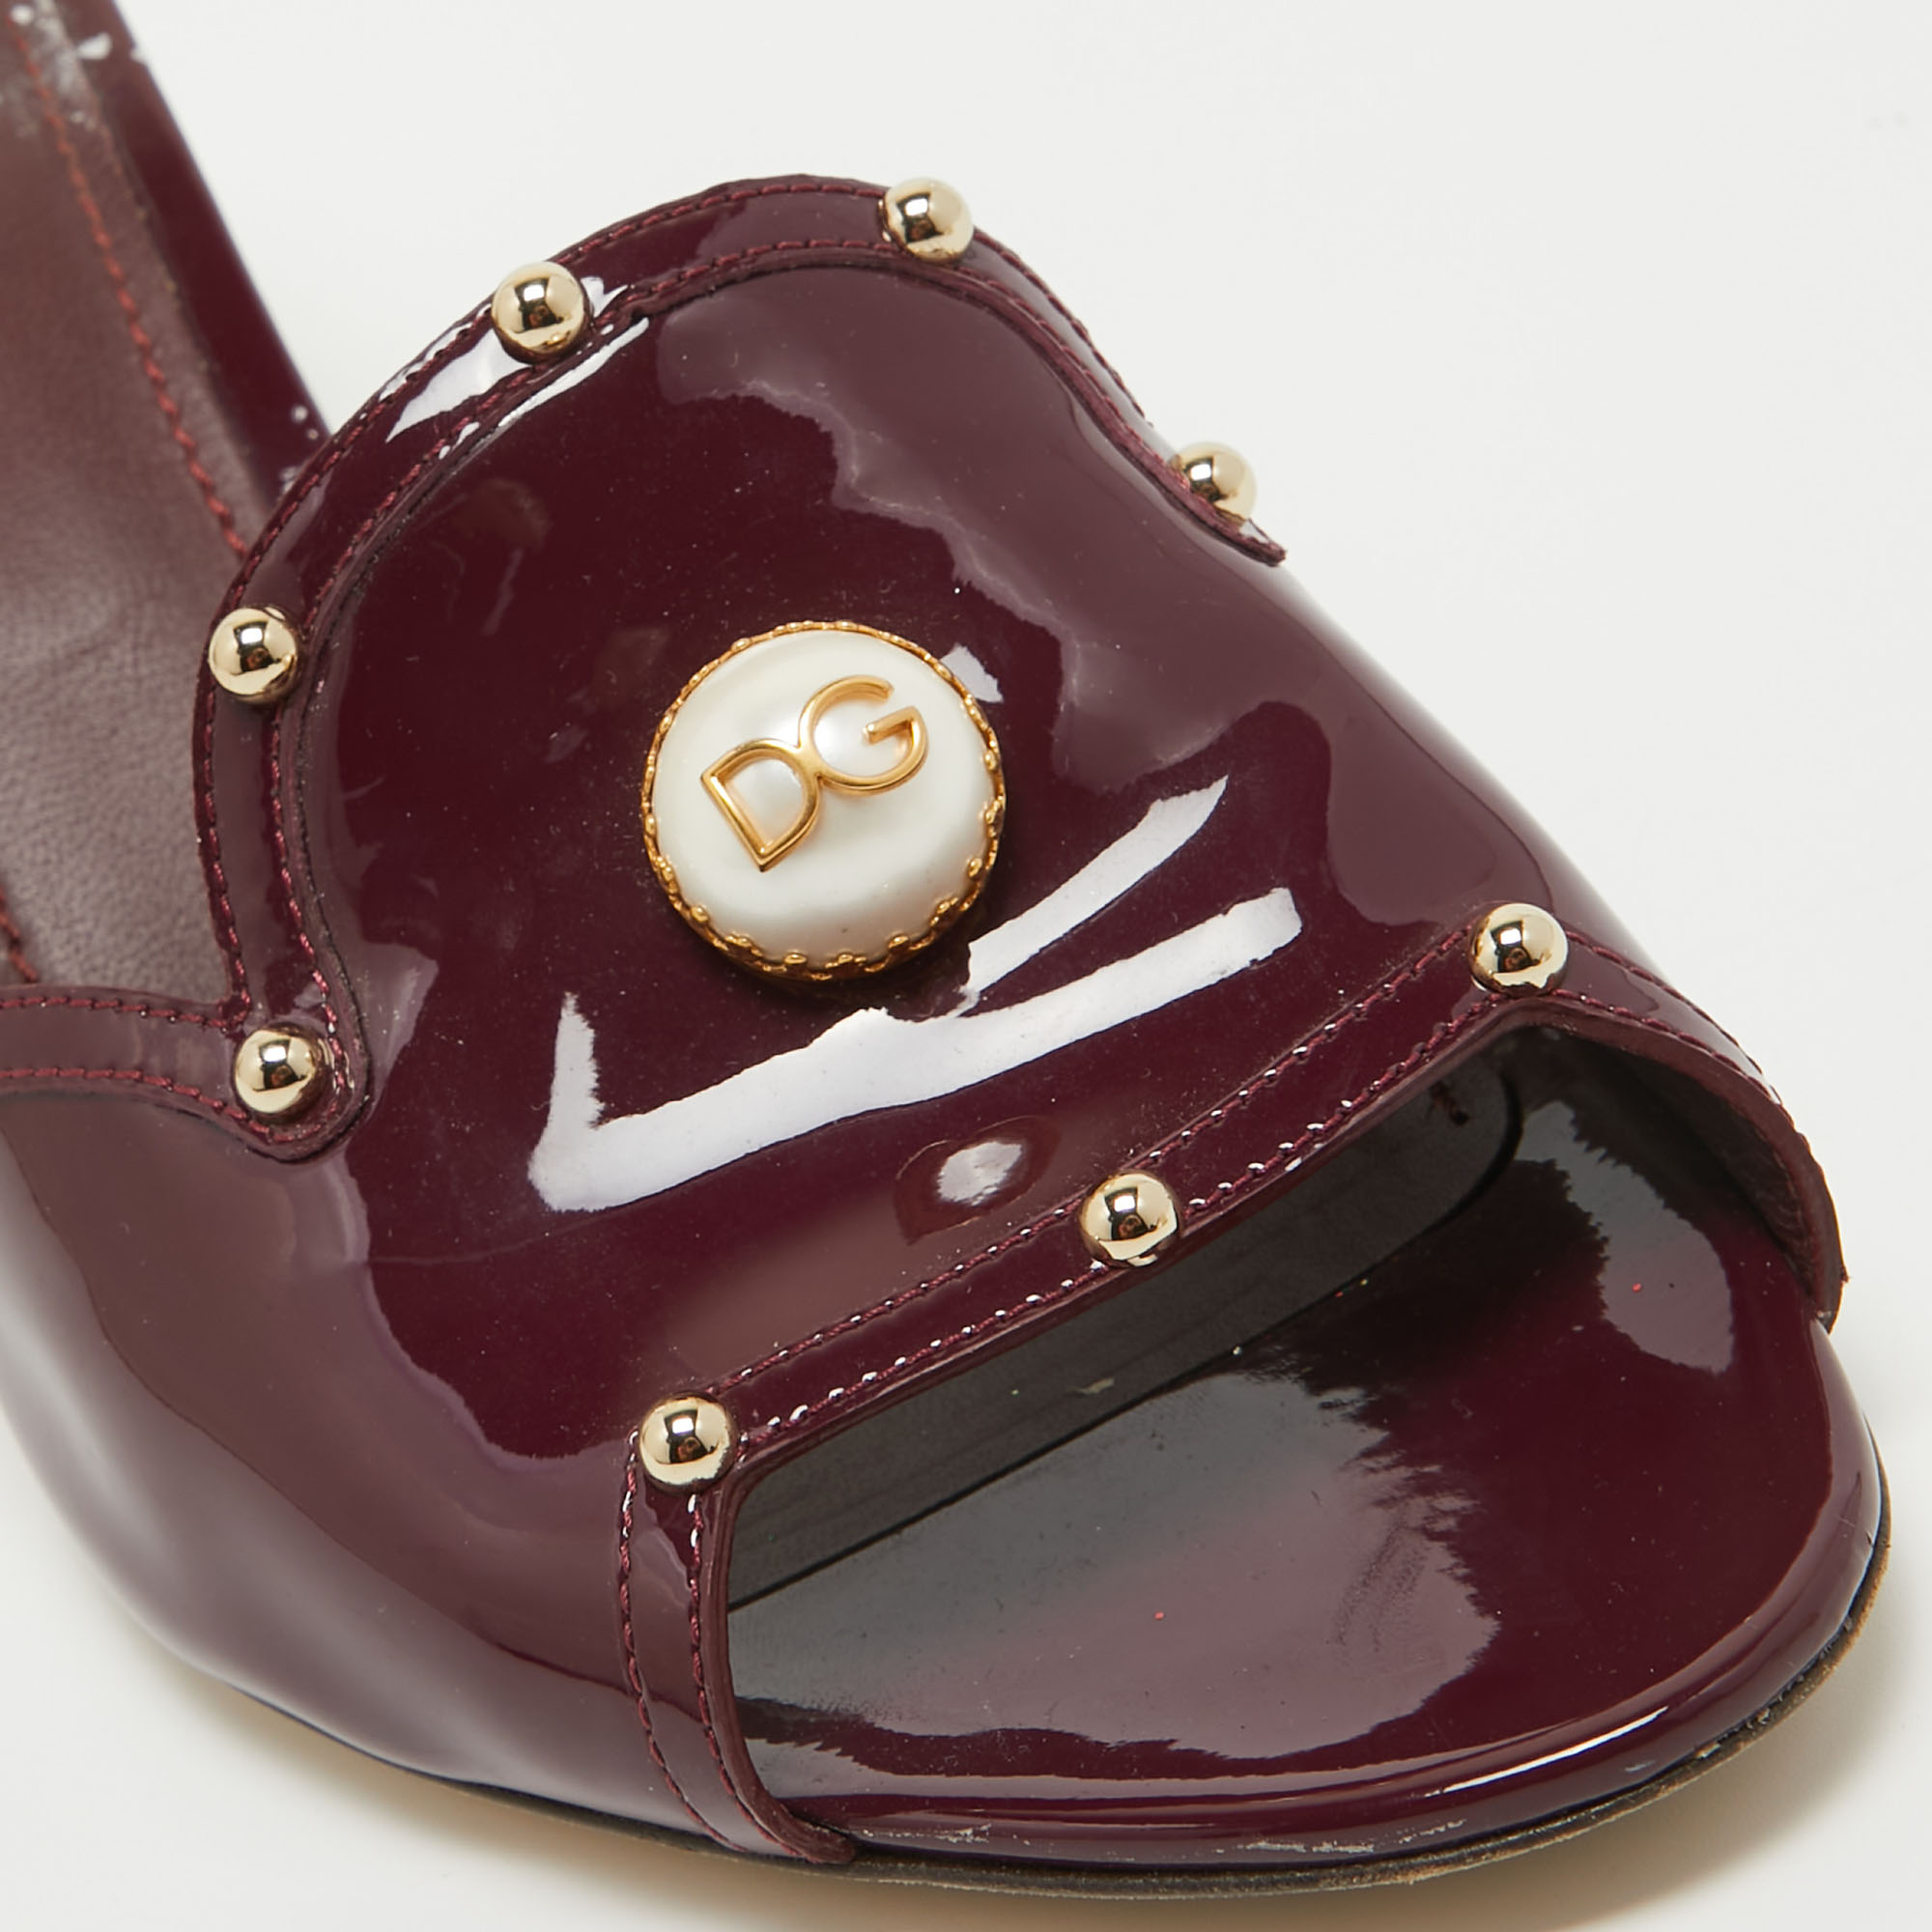 Dolce & Gabbana Burgundy Patent Leather Crystal Embellished Slide Sandals Size 41